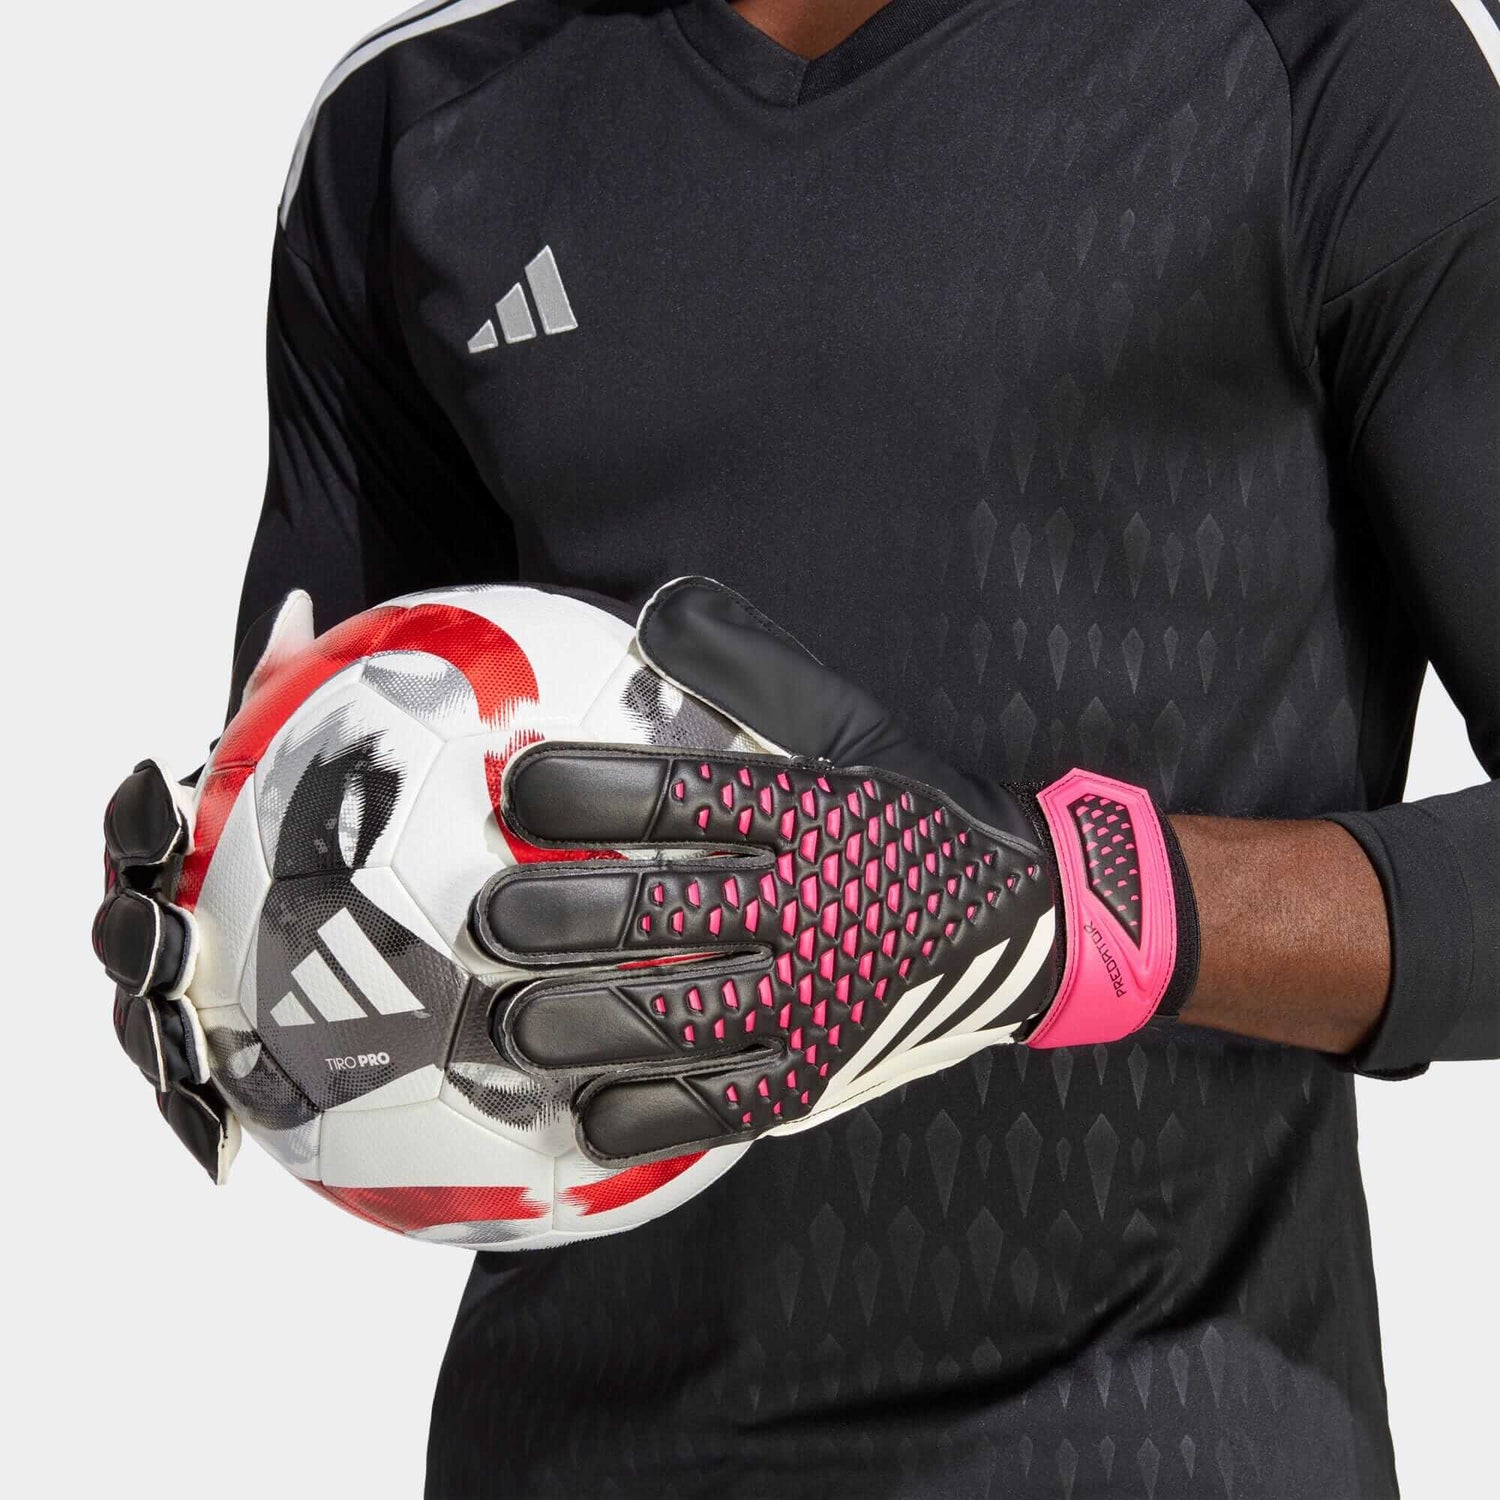 adidas Predator GL Training Goalkeeper Gloves - Black-White-Pink (Model 1)